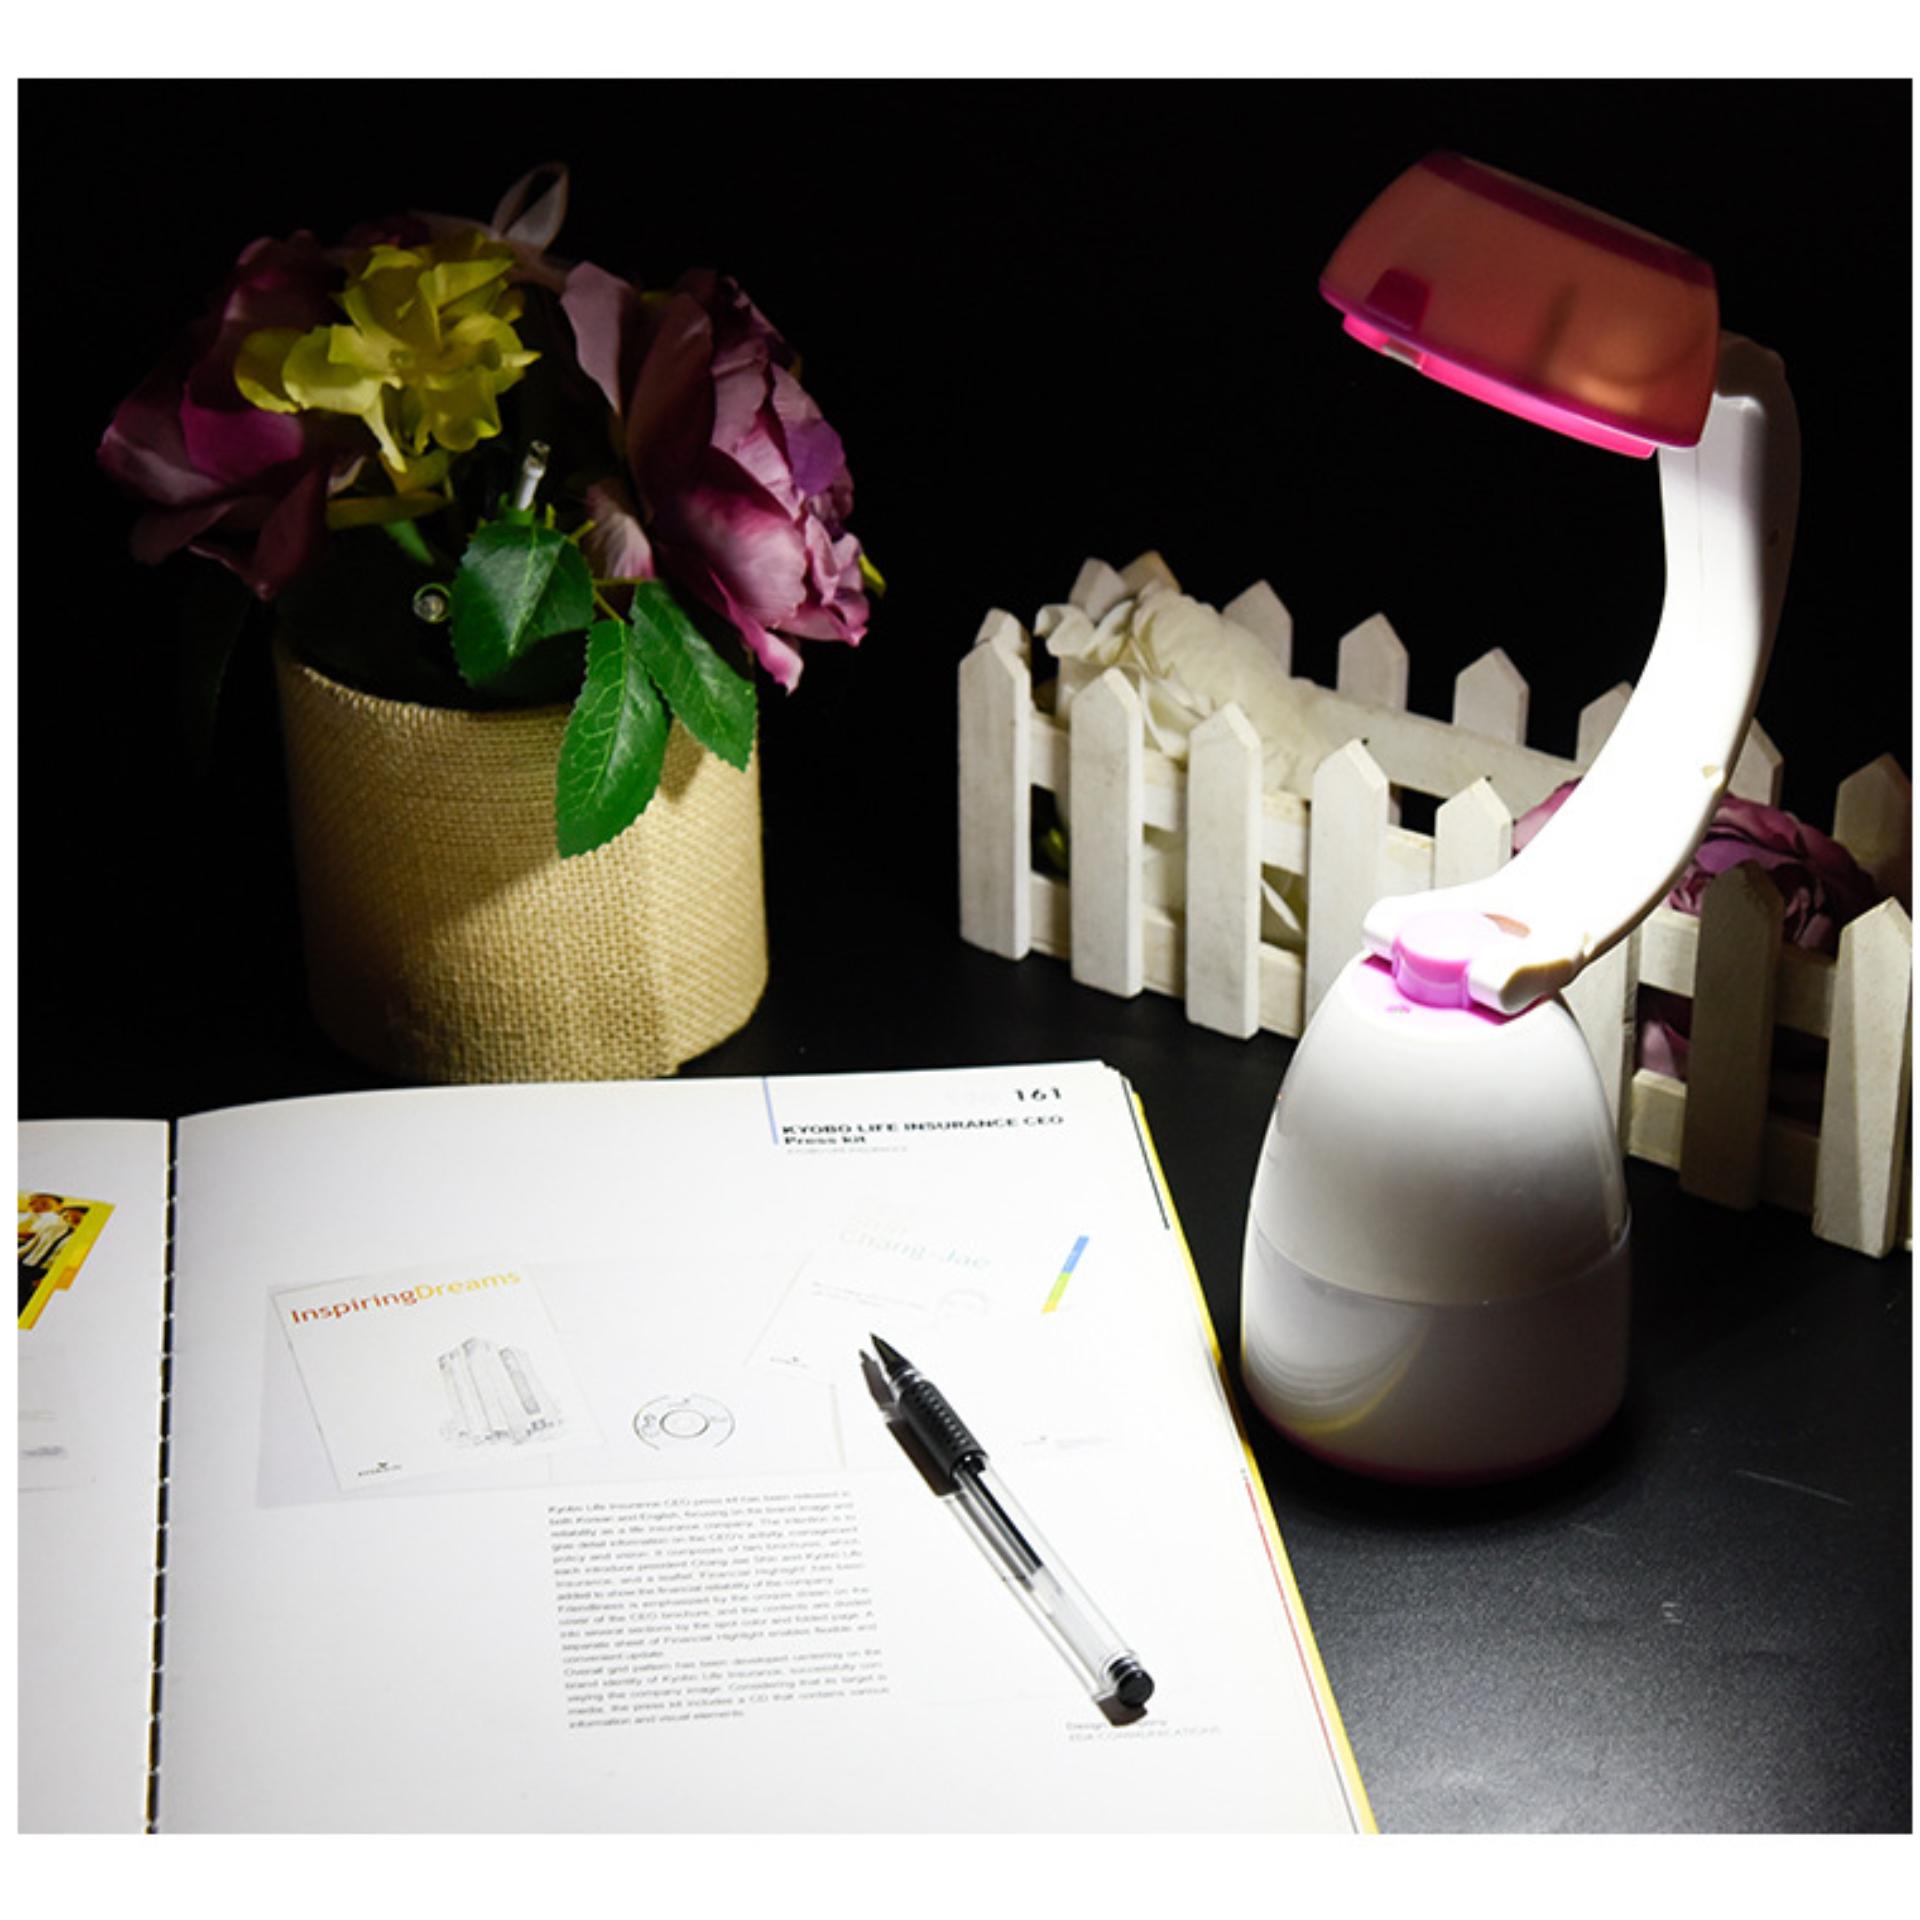 Đèn học để bàn|Đèn Led chống cận|Đèn Led Đa Năng 3 Trong 1 Kiêm Đèn Ngủ, Đèn Học, Đèn Pin|Chất Liệu Nhựa ABS Chịu Nhiệt, Bóng Led Tiết Kiệm Điện